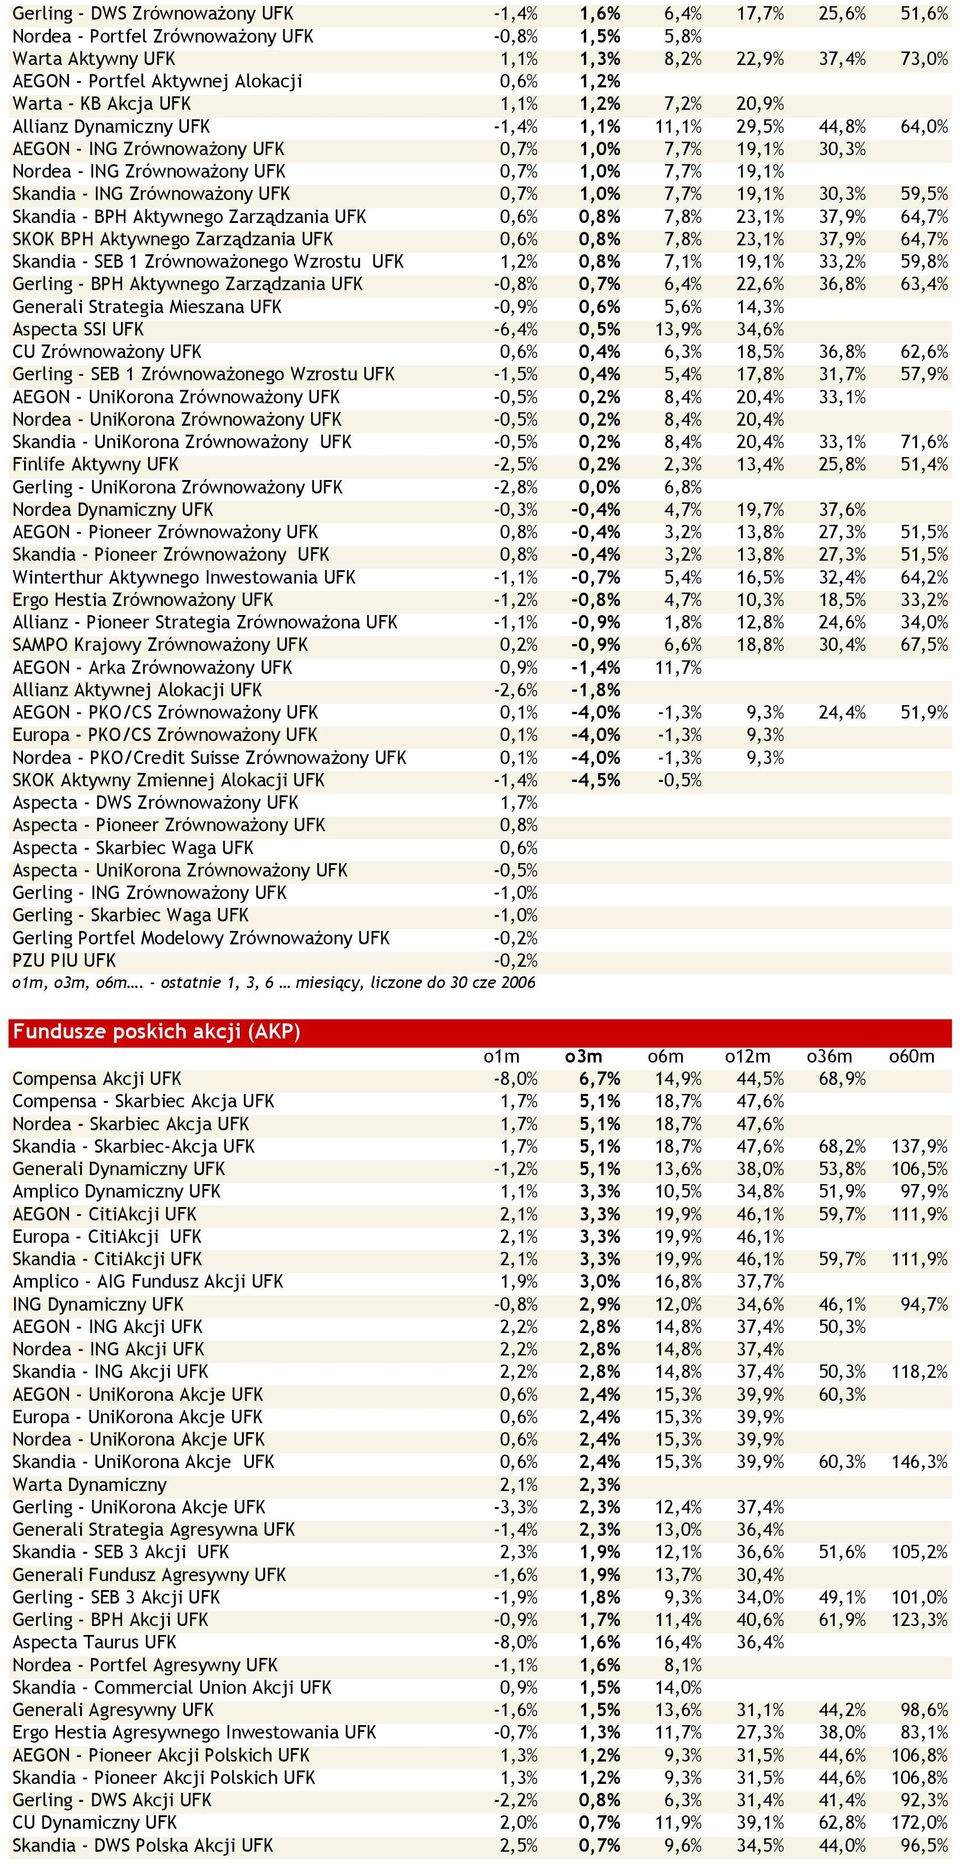 0,7% 1,0% 7,7% 19,1% Skandia - ING Zrównoważony UFK 0,7% 1,0% 7,7% 19,1% 30,3% 59,5% Skandia - BPH Aktywnego Zarządzania UFK 0,6% 0,8% 7,8% 23,1% 37,9% 64,7% SKOK BPH Aktywnego Zarządzania UFK 0,6%